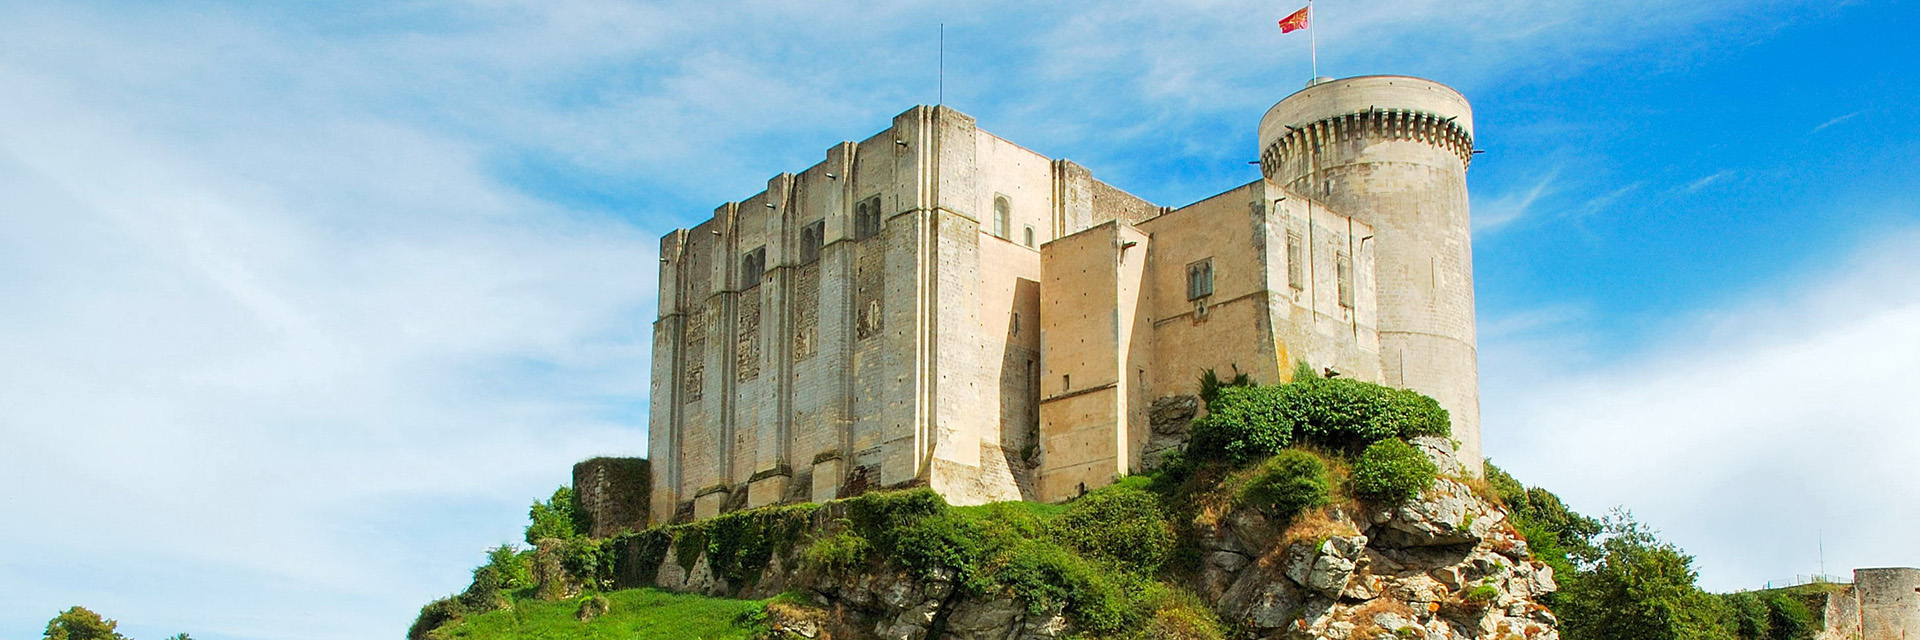 Le Château Guillaume-le-Conquérant